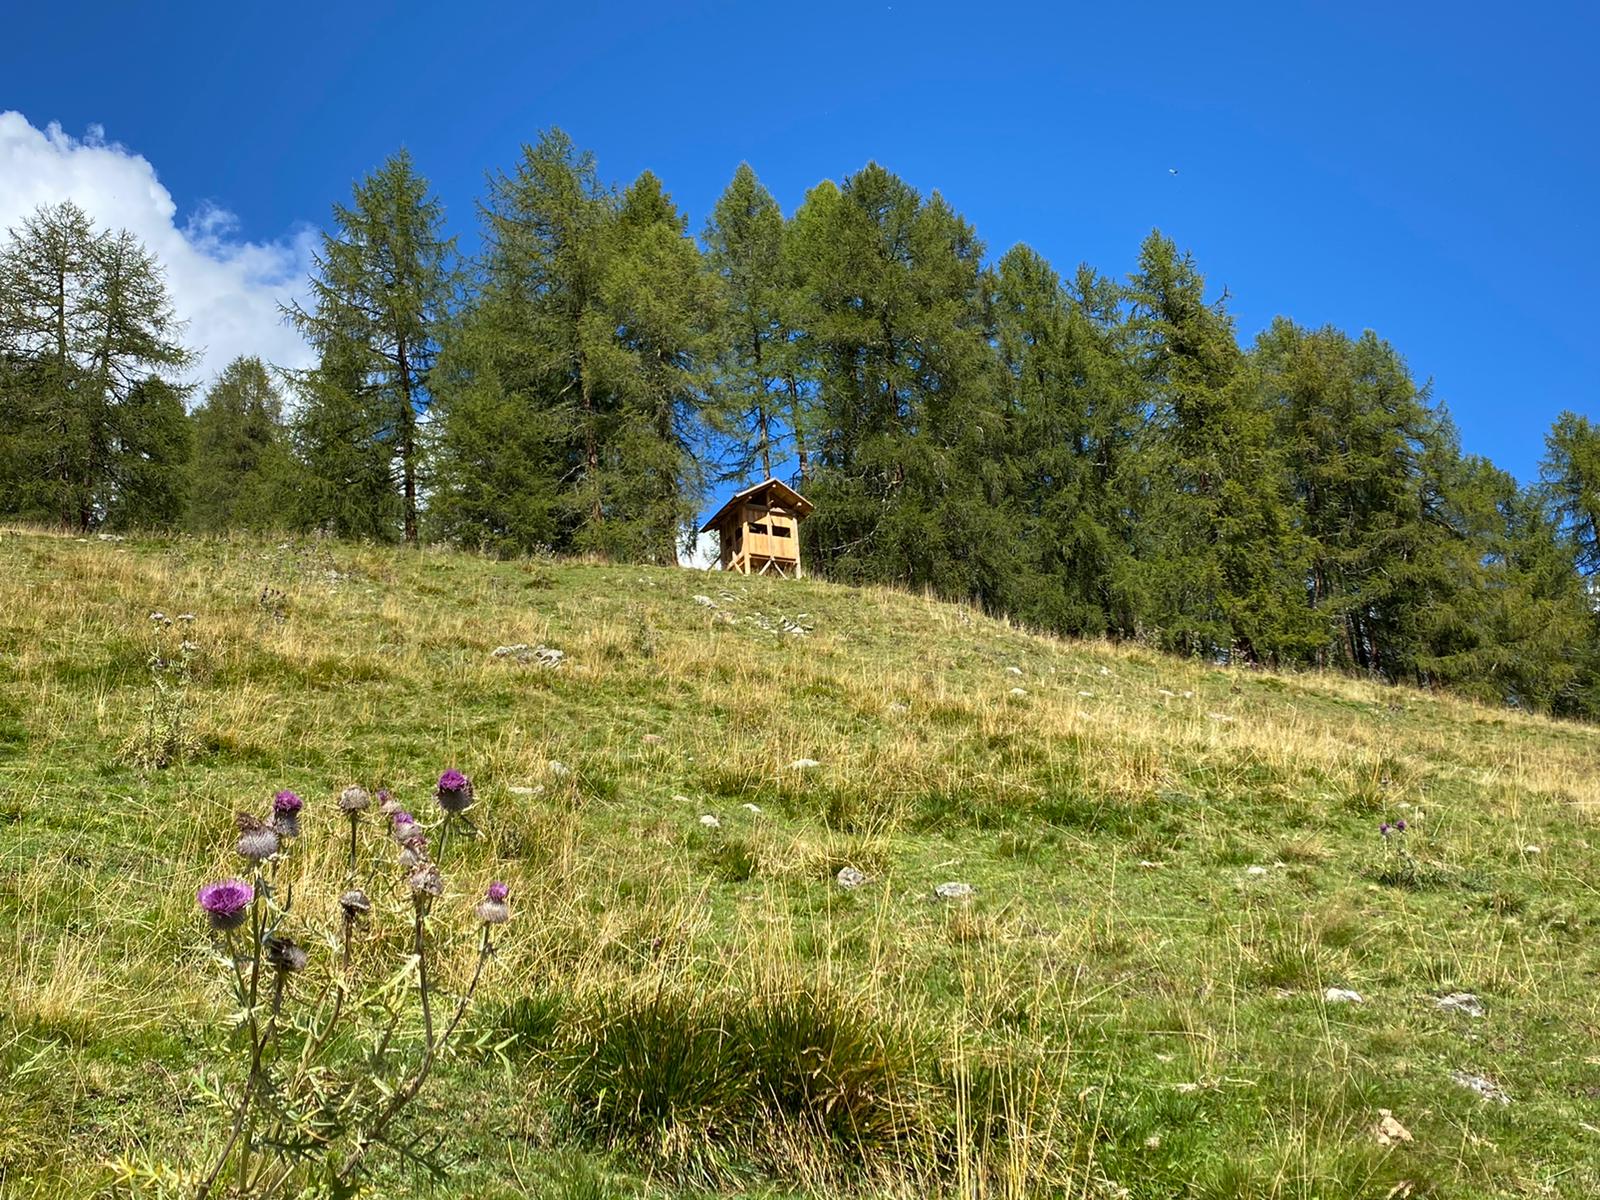 Nei pressi di Malga Monte Sole, in Val Cercen, sorge una casetta realizzata per mettersi all'ascolto del bramito dei cervi, senza disturbarli.